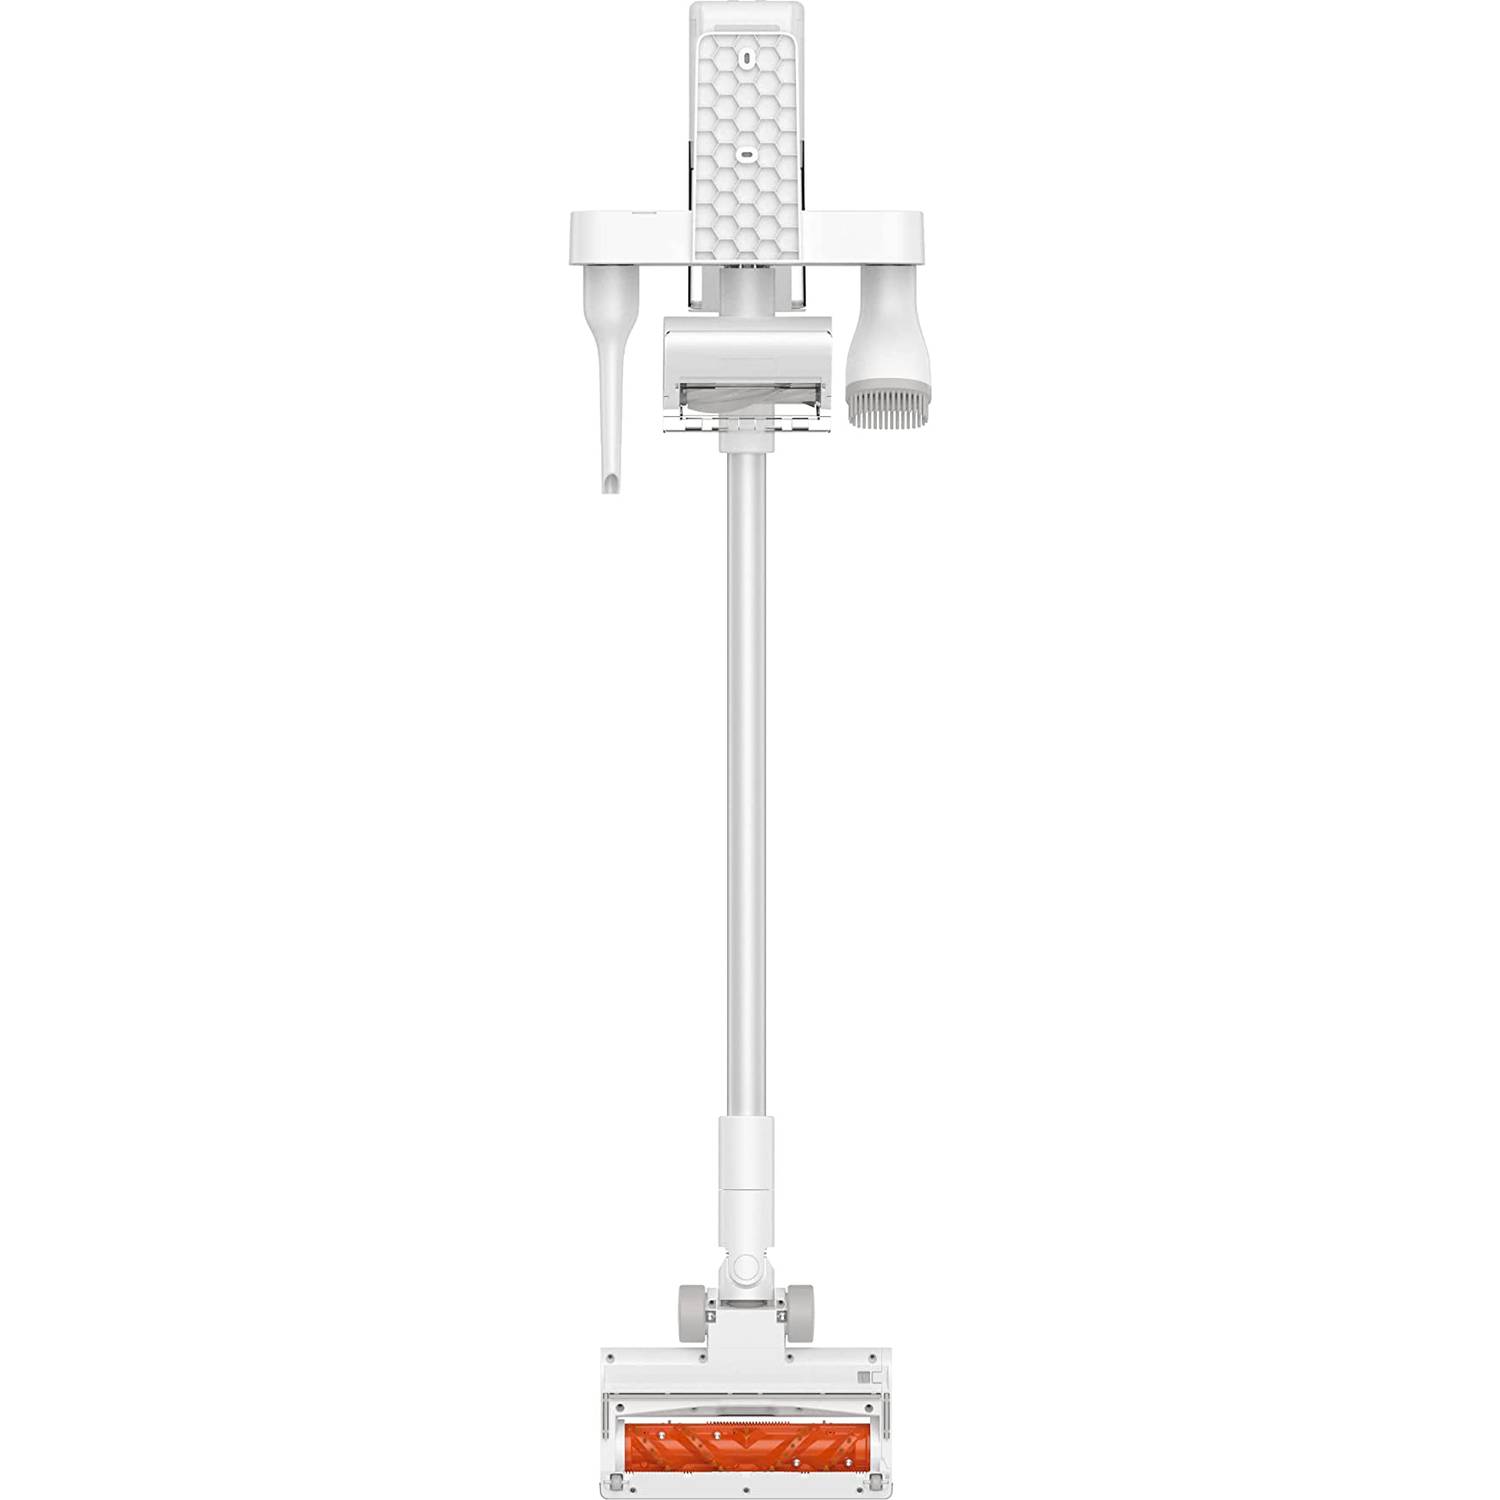 Mi Vacuum Cleaner G11  Authorized Xiaomi Store PH Online